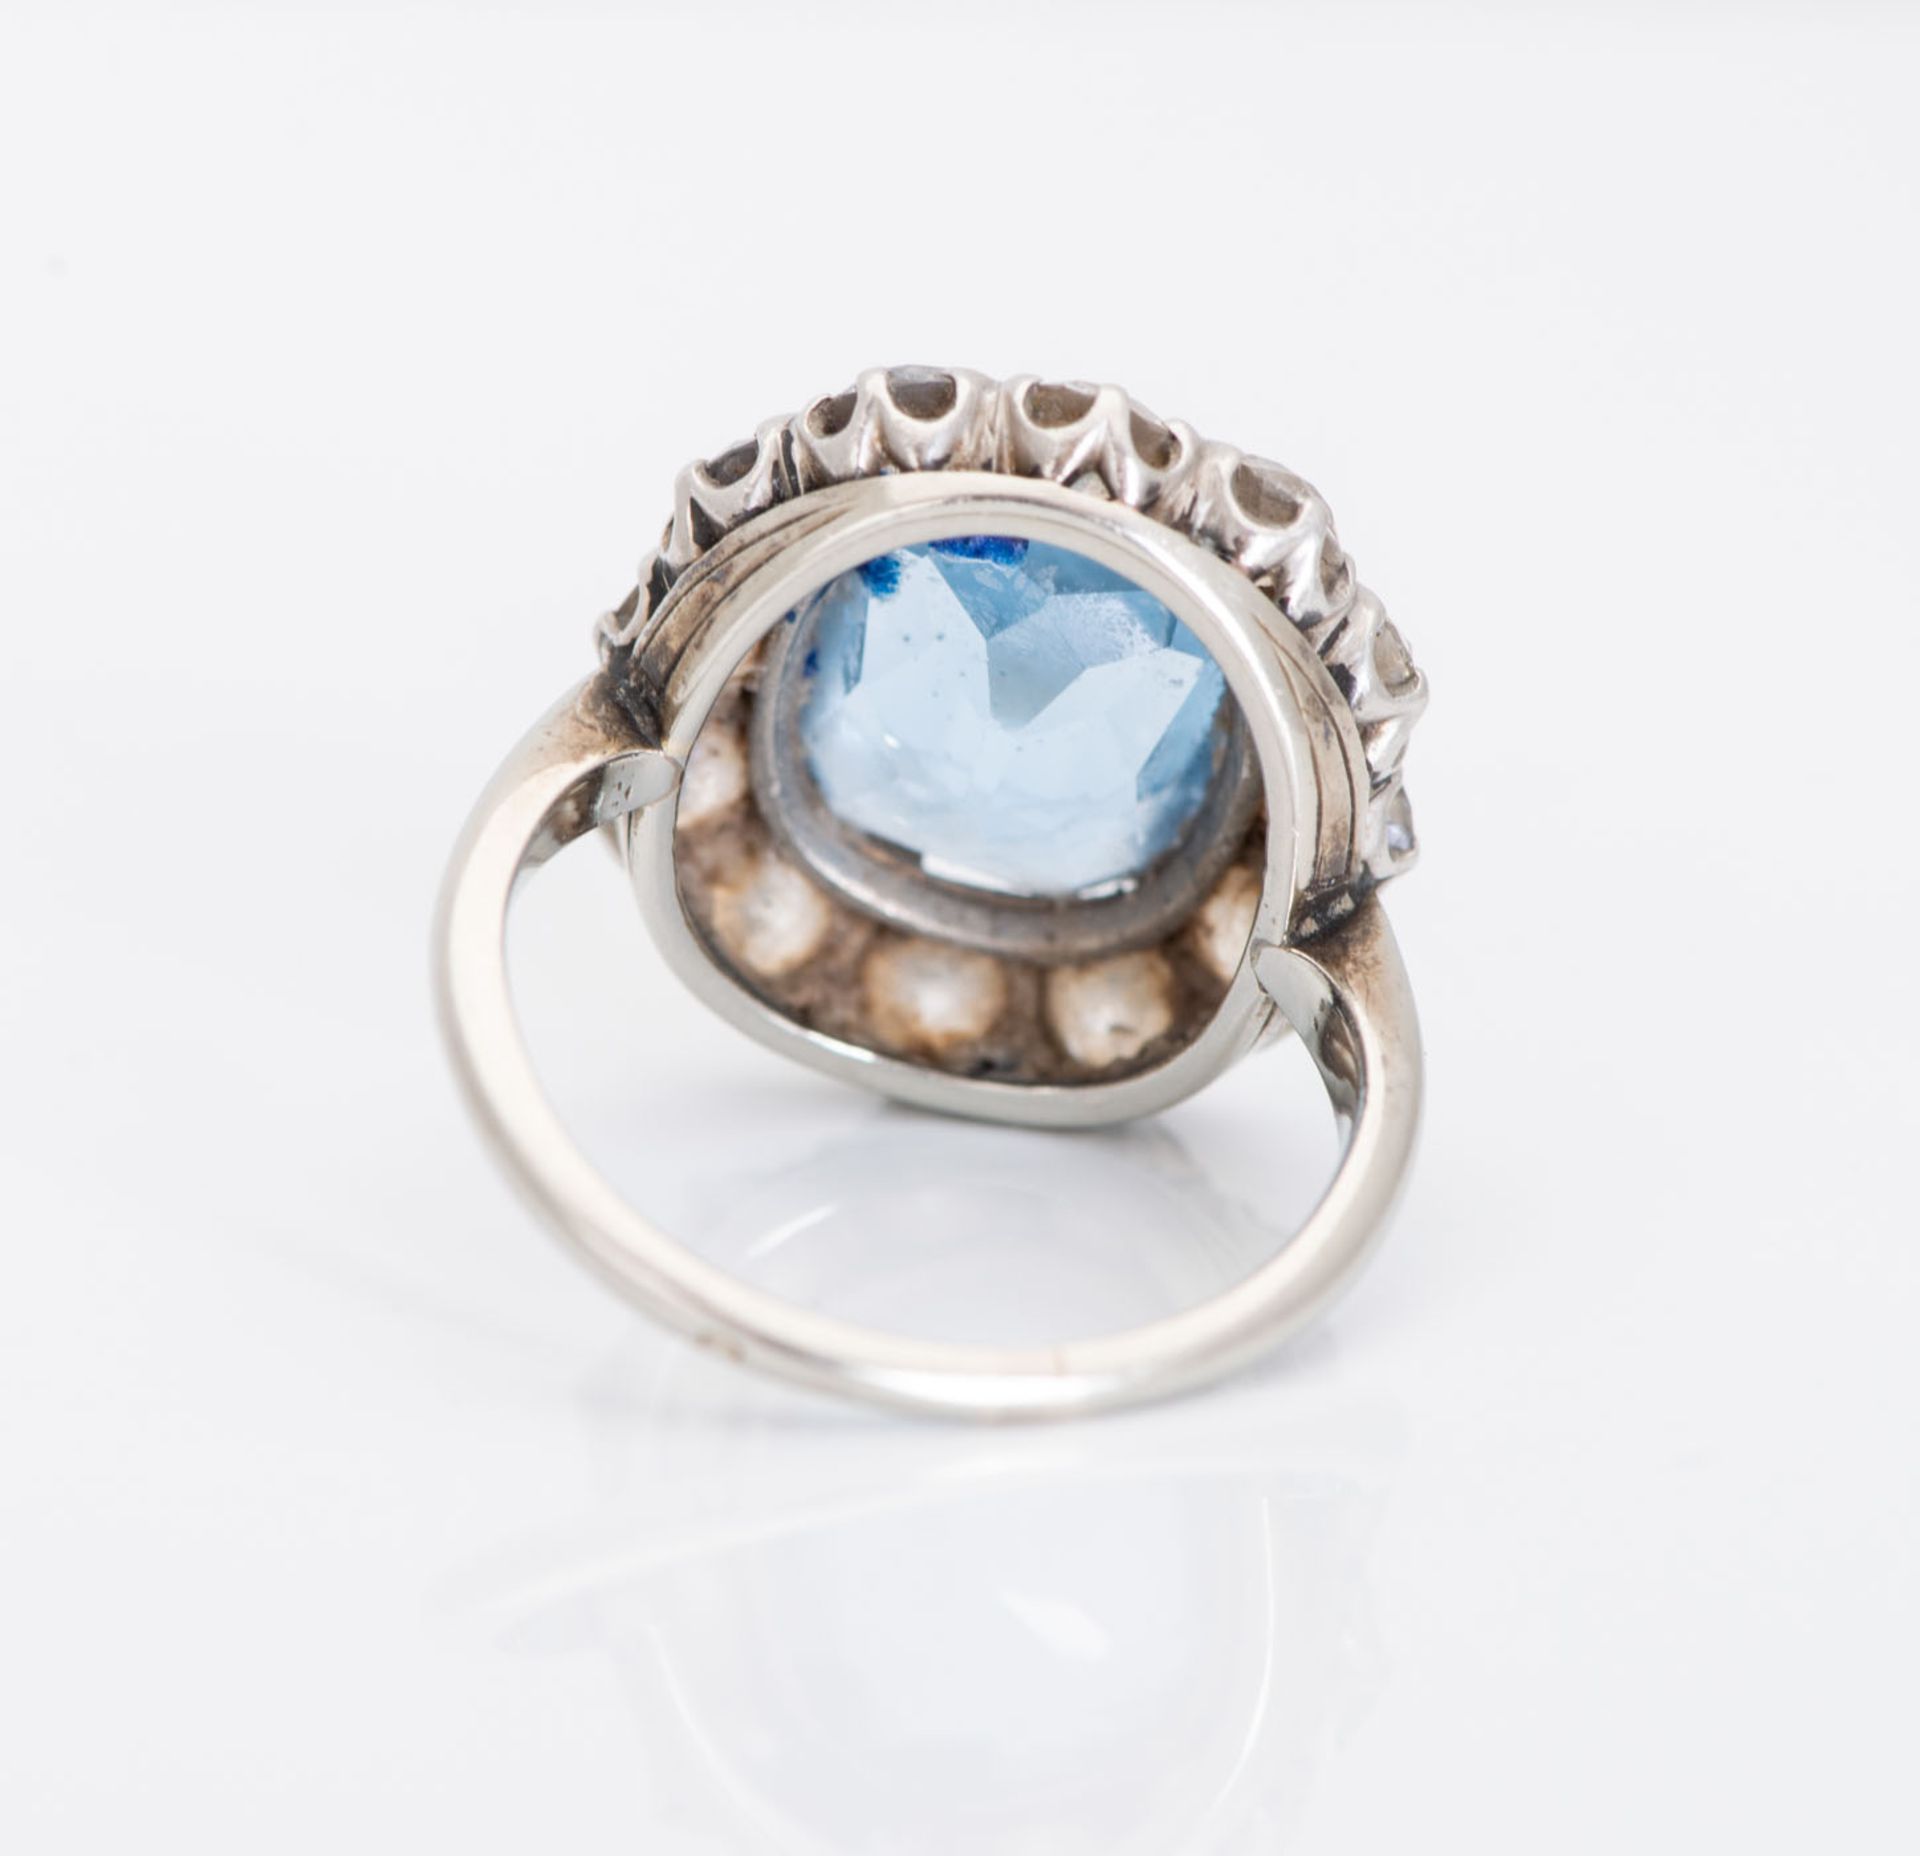 A Fine Edwardian 18K White Gold Diamond and Aquamarine Ring - Image 4 of 4